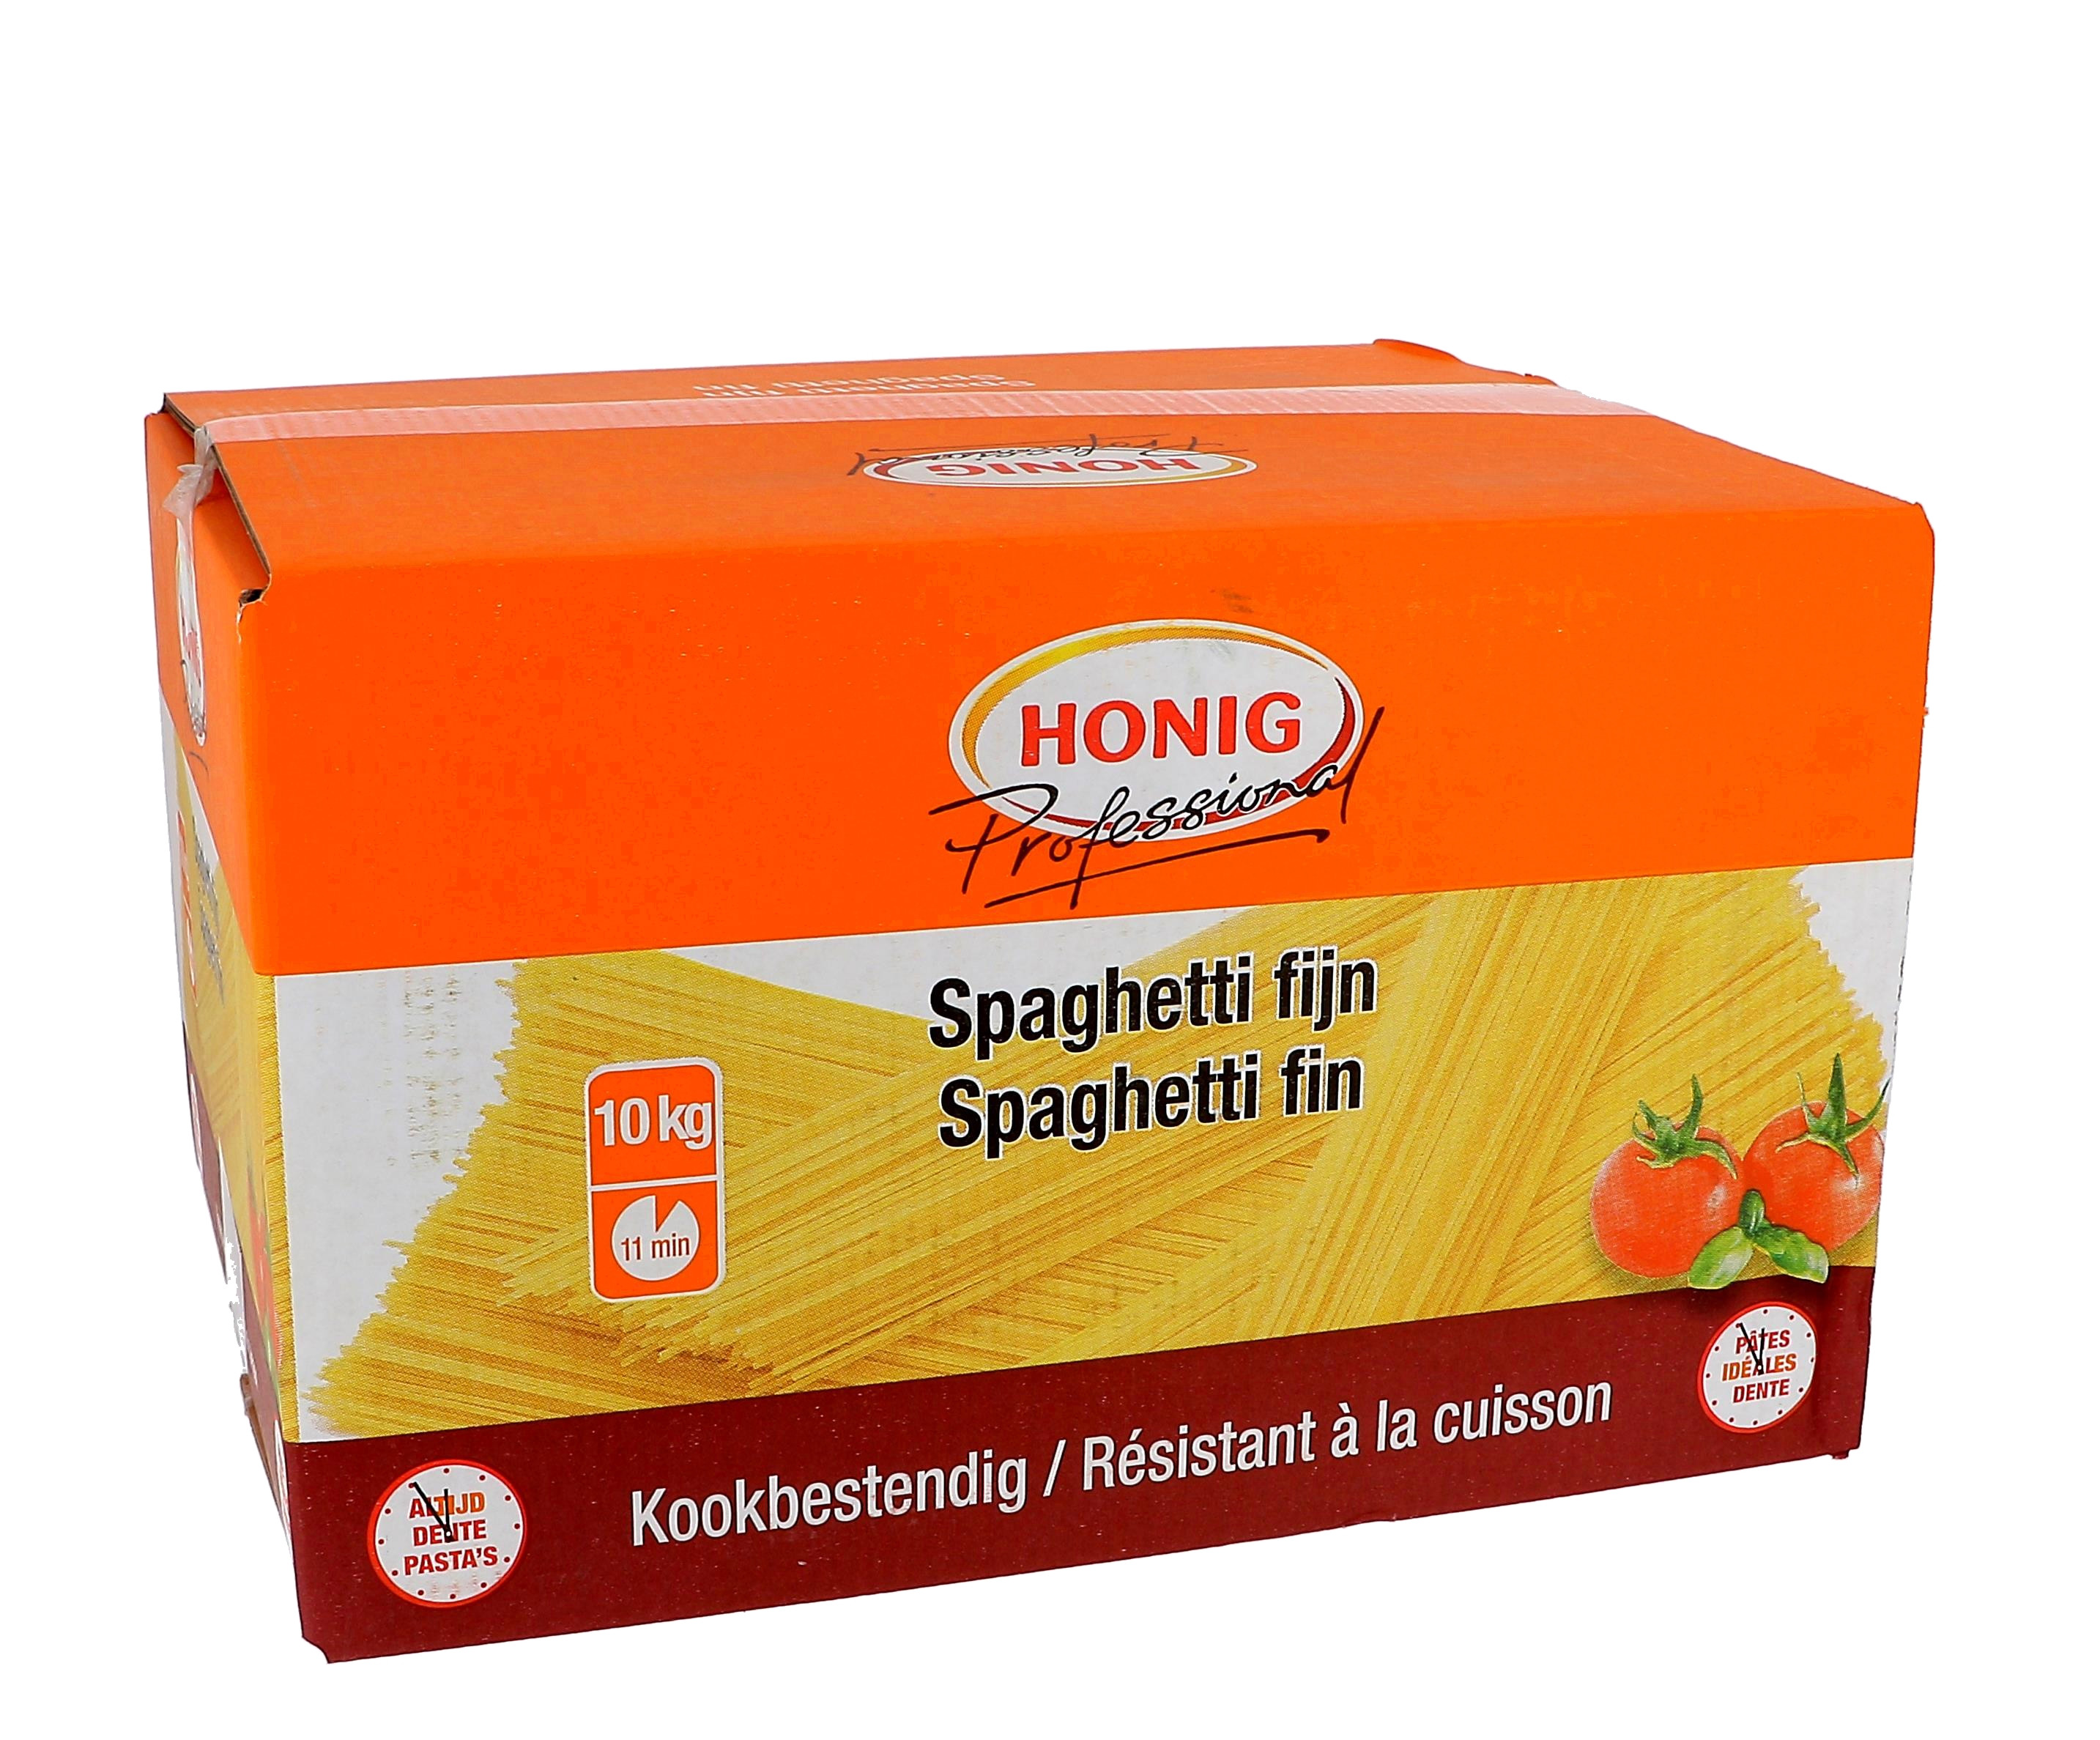 Honig spaghetti fijn 10kg Professional kookbestendig 